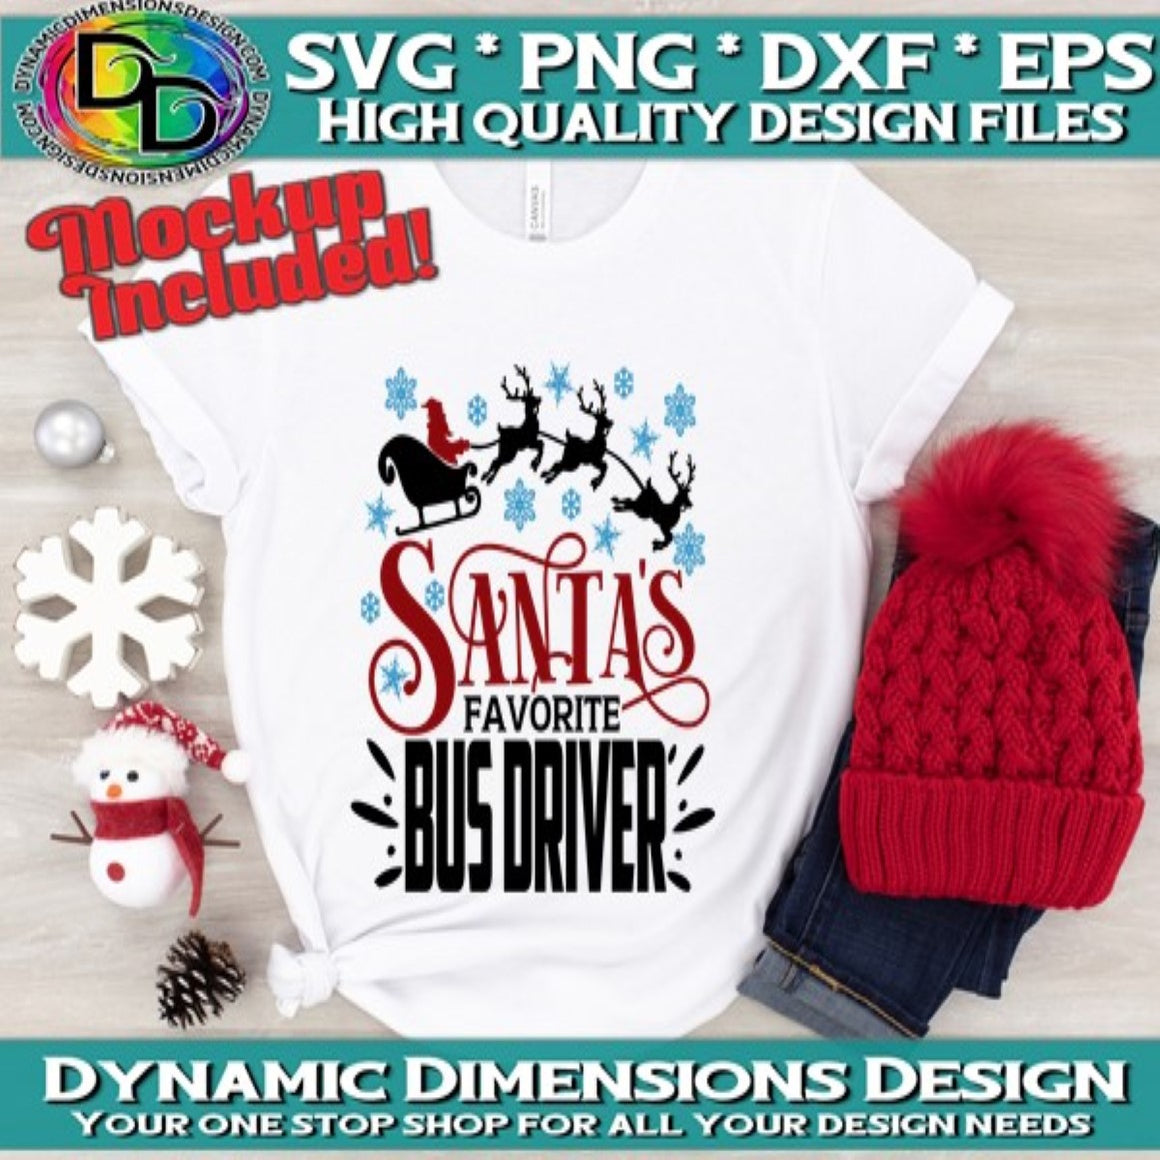 Santa's favorite Bus Driver svg, png, instant download, dxf, eps, pdf, jpg, cricut, silhouette, sublimtion, printable